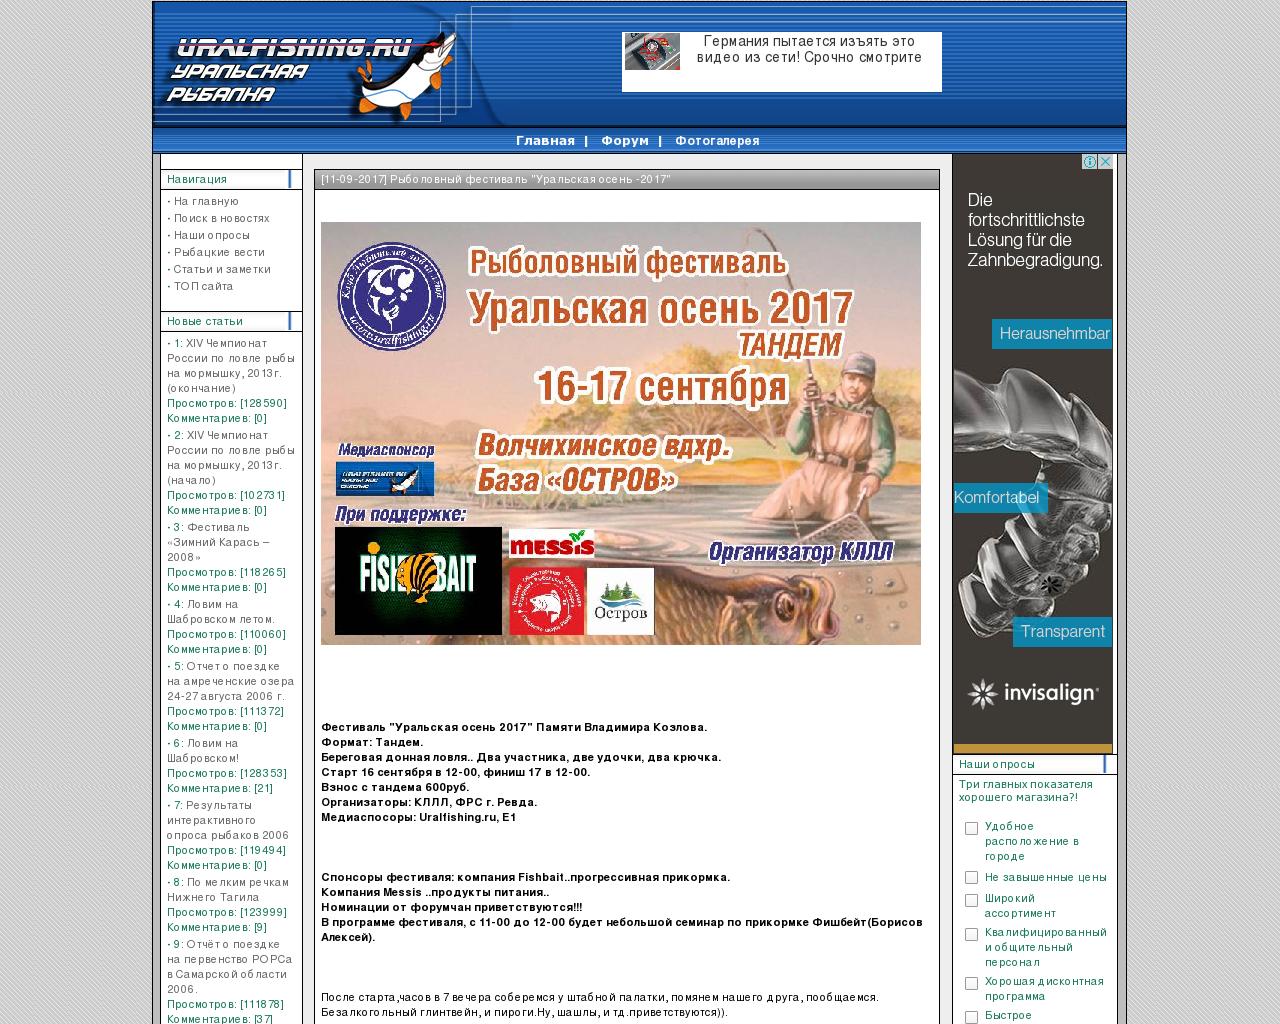 Изображение сайта uralfishing.ru в разрешении 1280x1024